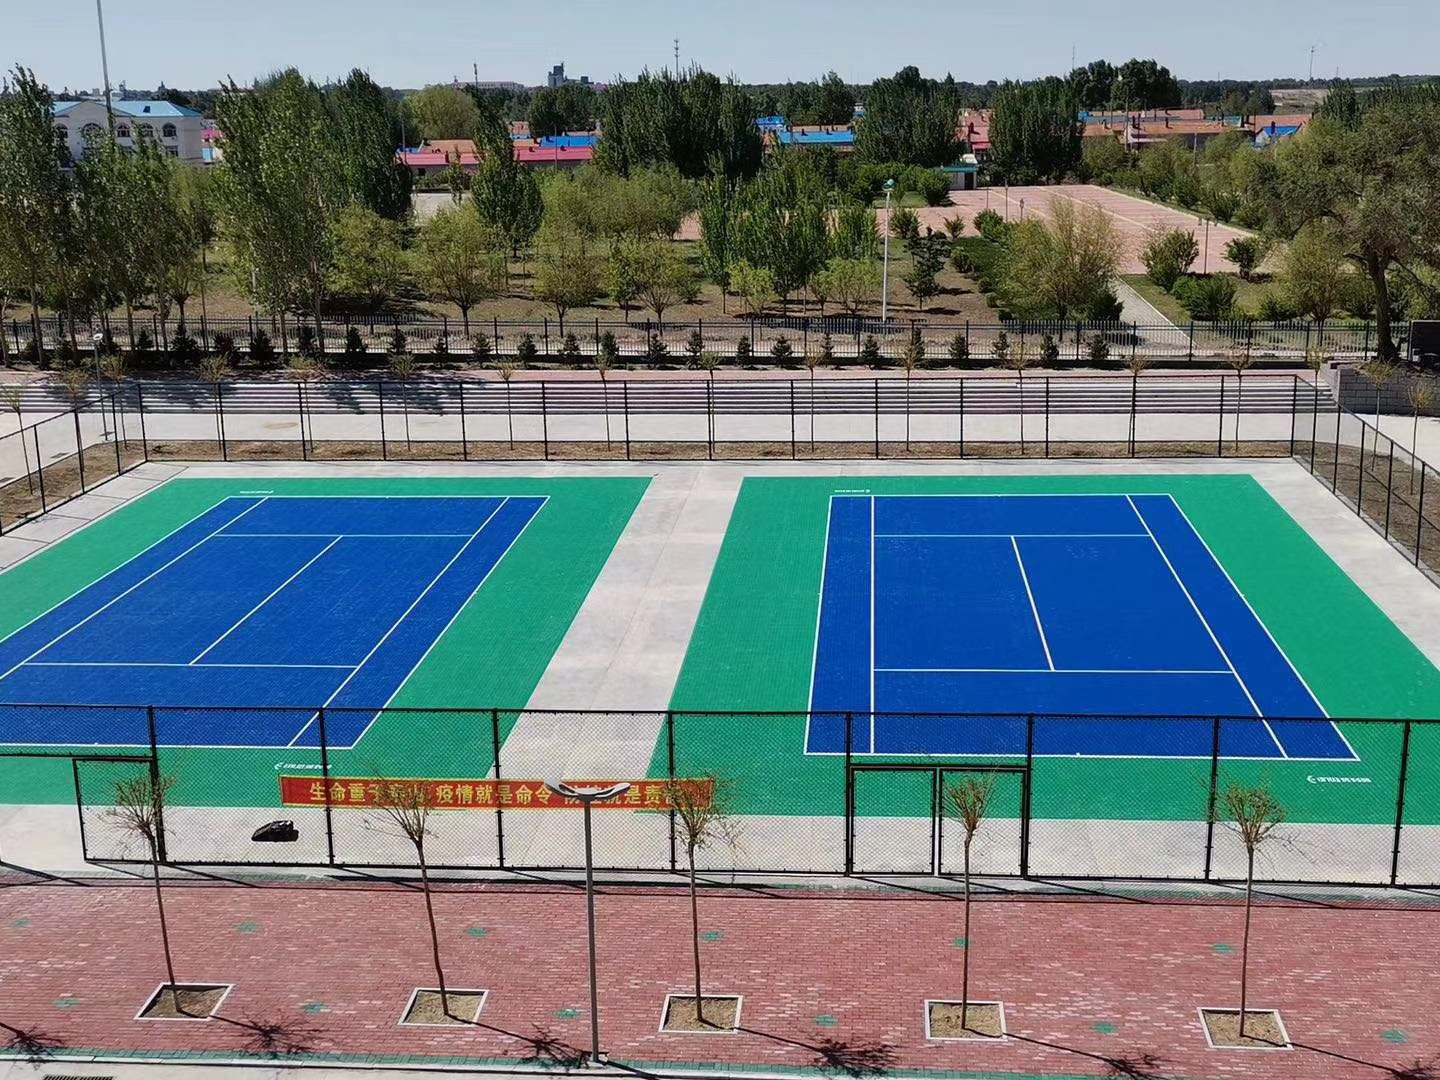 pisos de cancha de tenis al aire libre